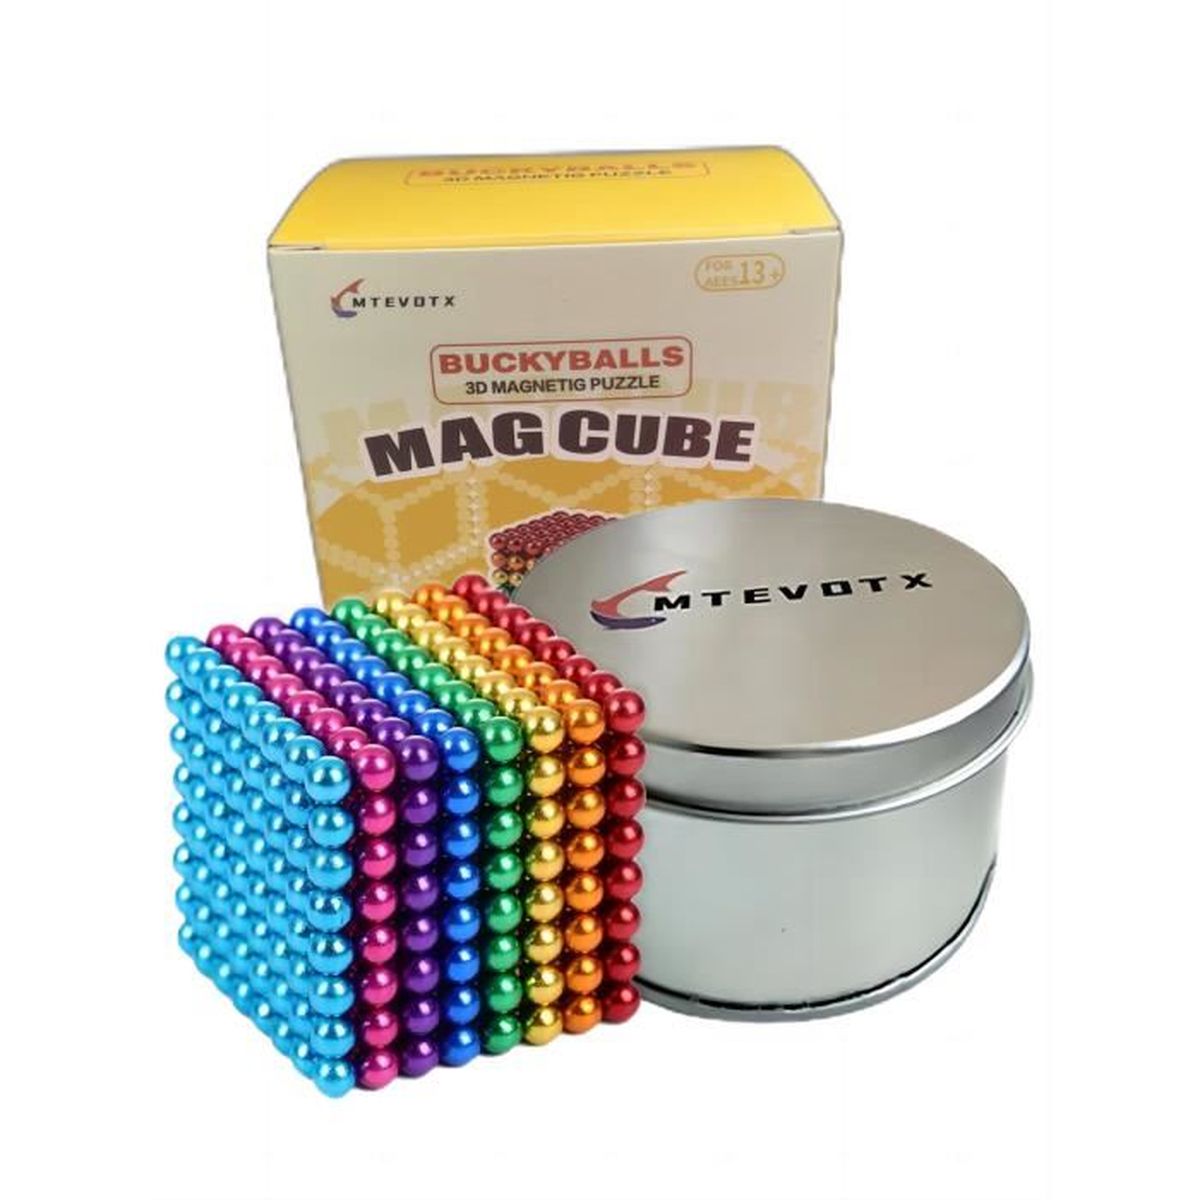 Cube Magnétique En Billes En Métal Photo stock éditorial - Illustration du  bille, reflétez: 26920993